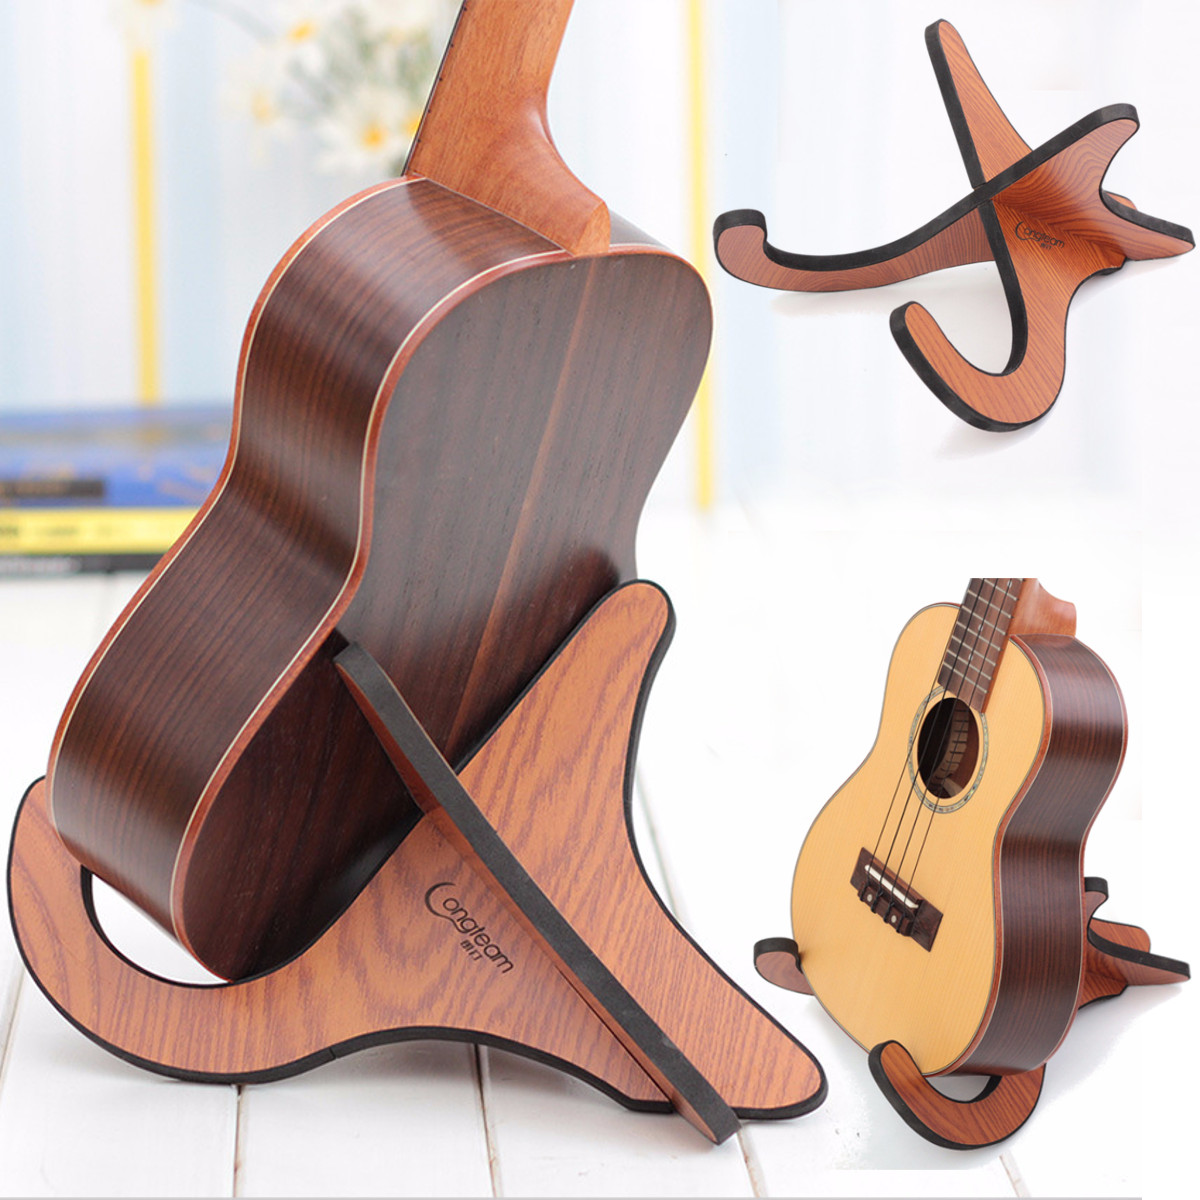 Multifunctional-Wooden-Guitar-Ukulele-Tablet-Holder-Desktop-Bracket-Stand-1876166-8